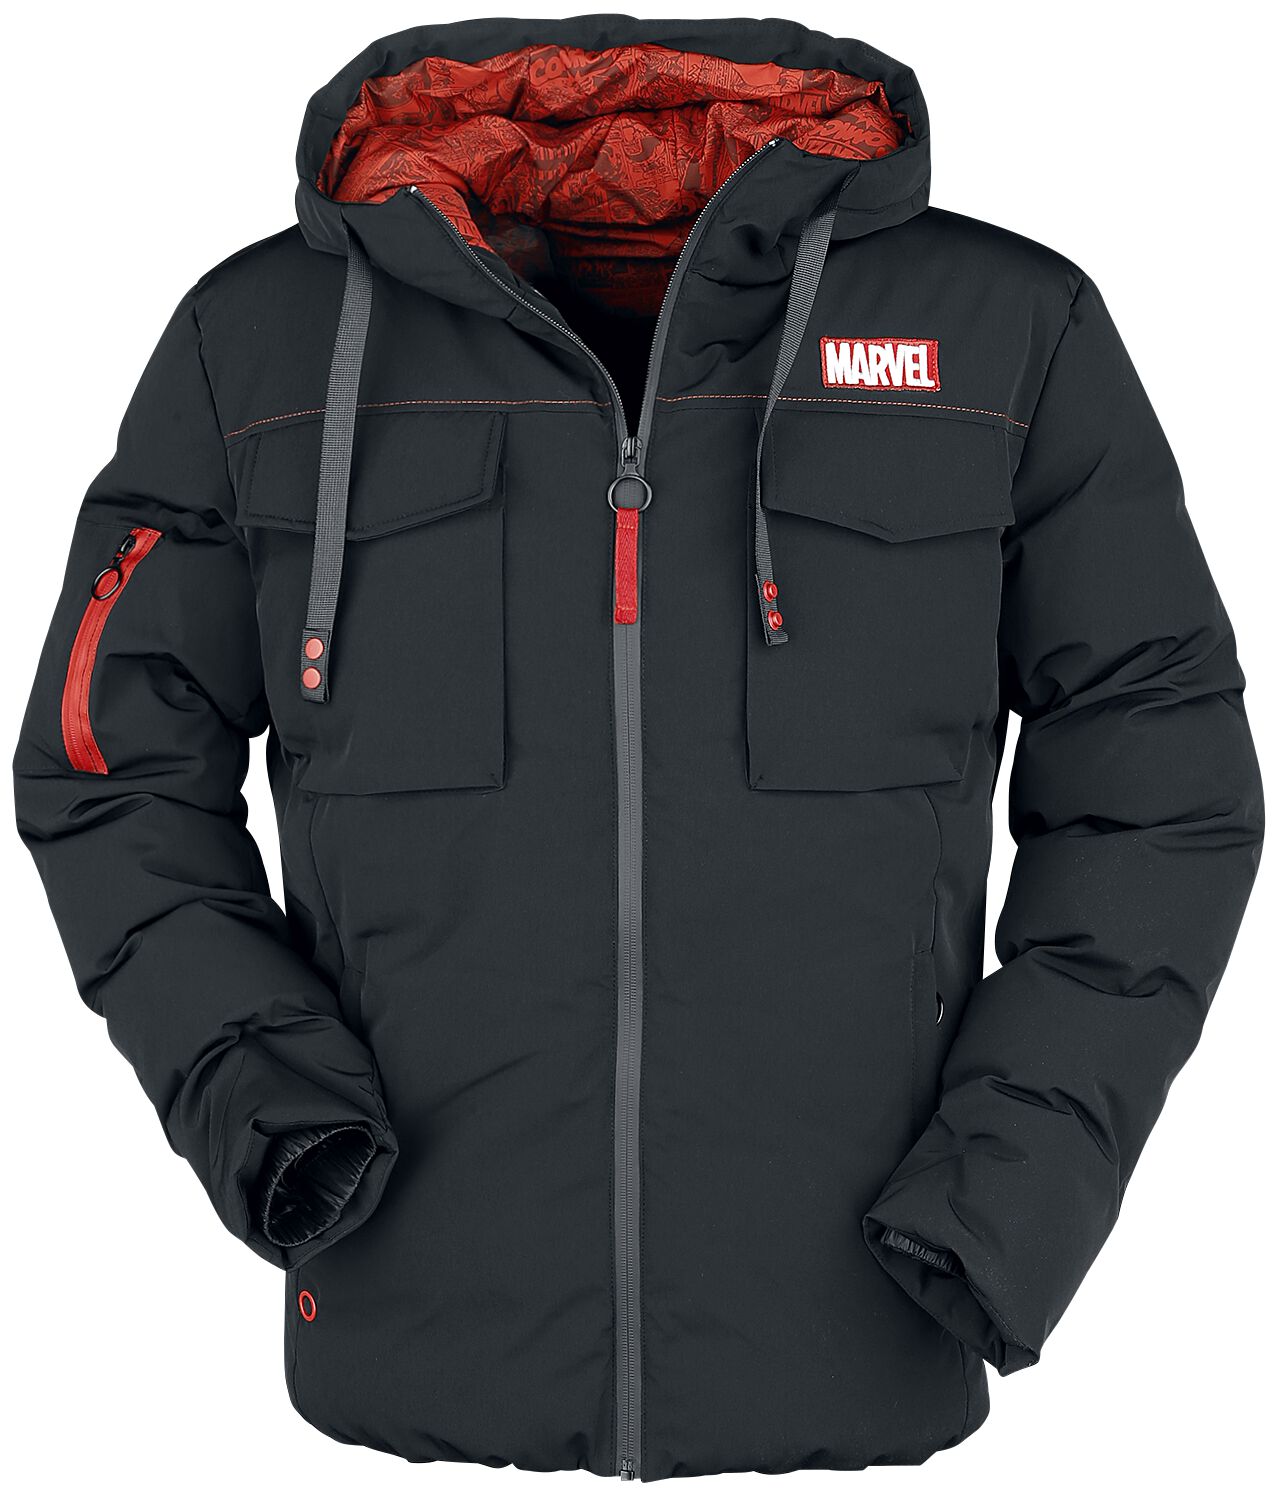 Marvel - Marvel Winterjacke - Marvel Logo - S bis XL - für Männer - Größe XL - schwarz  - EMP exklusives Merchandise! von Marvel